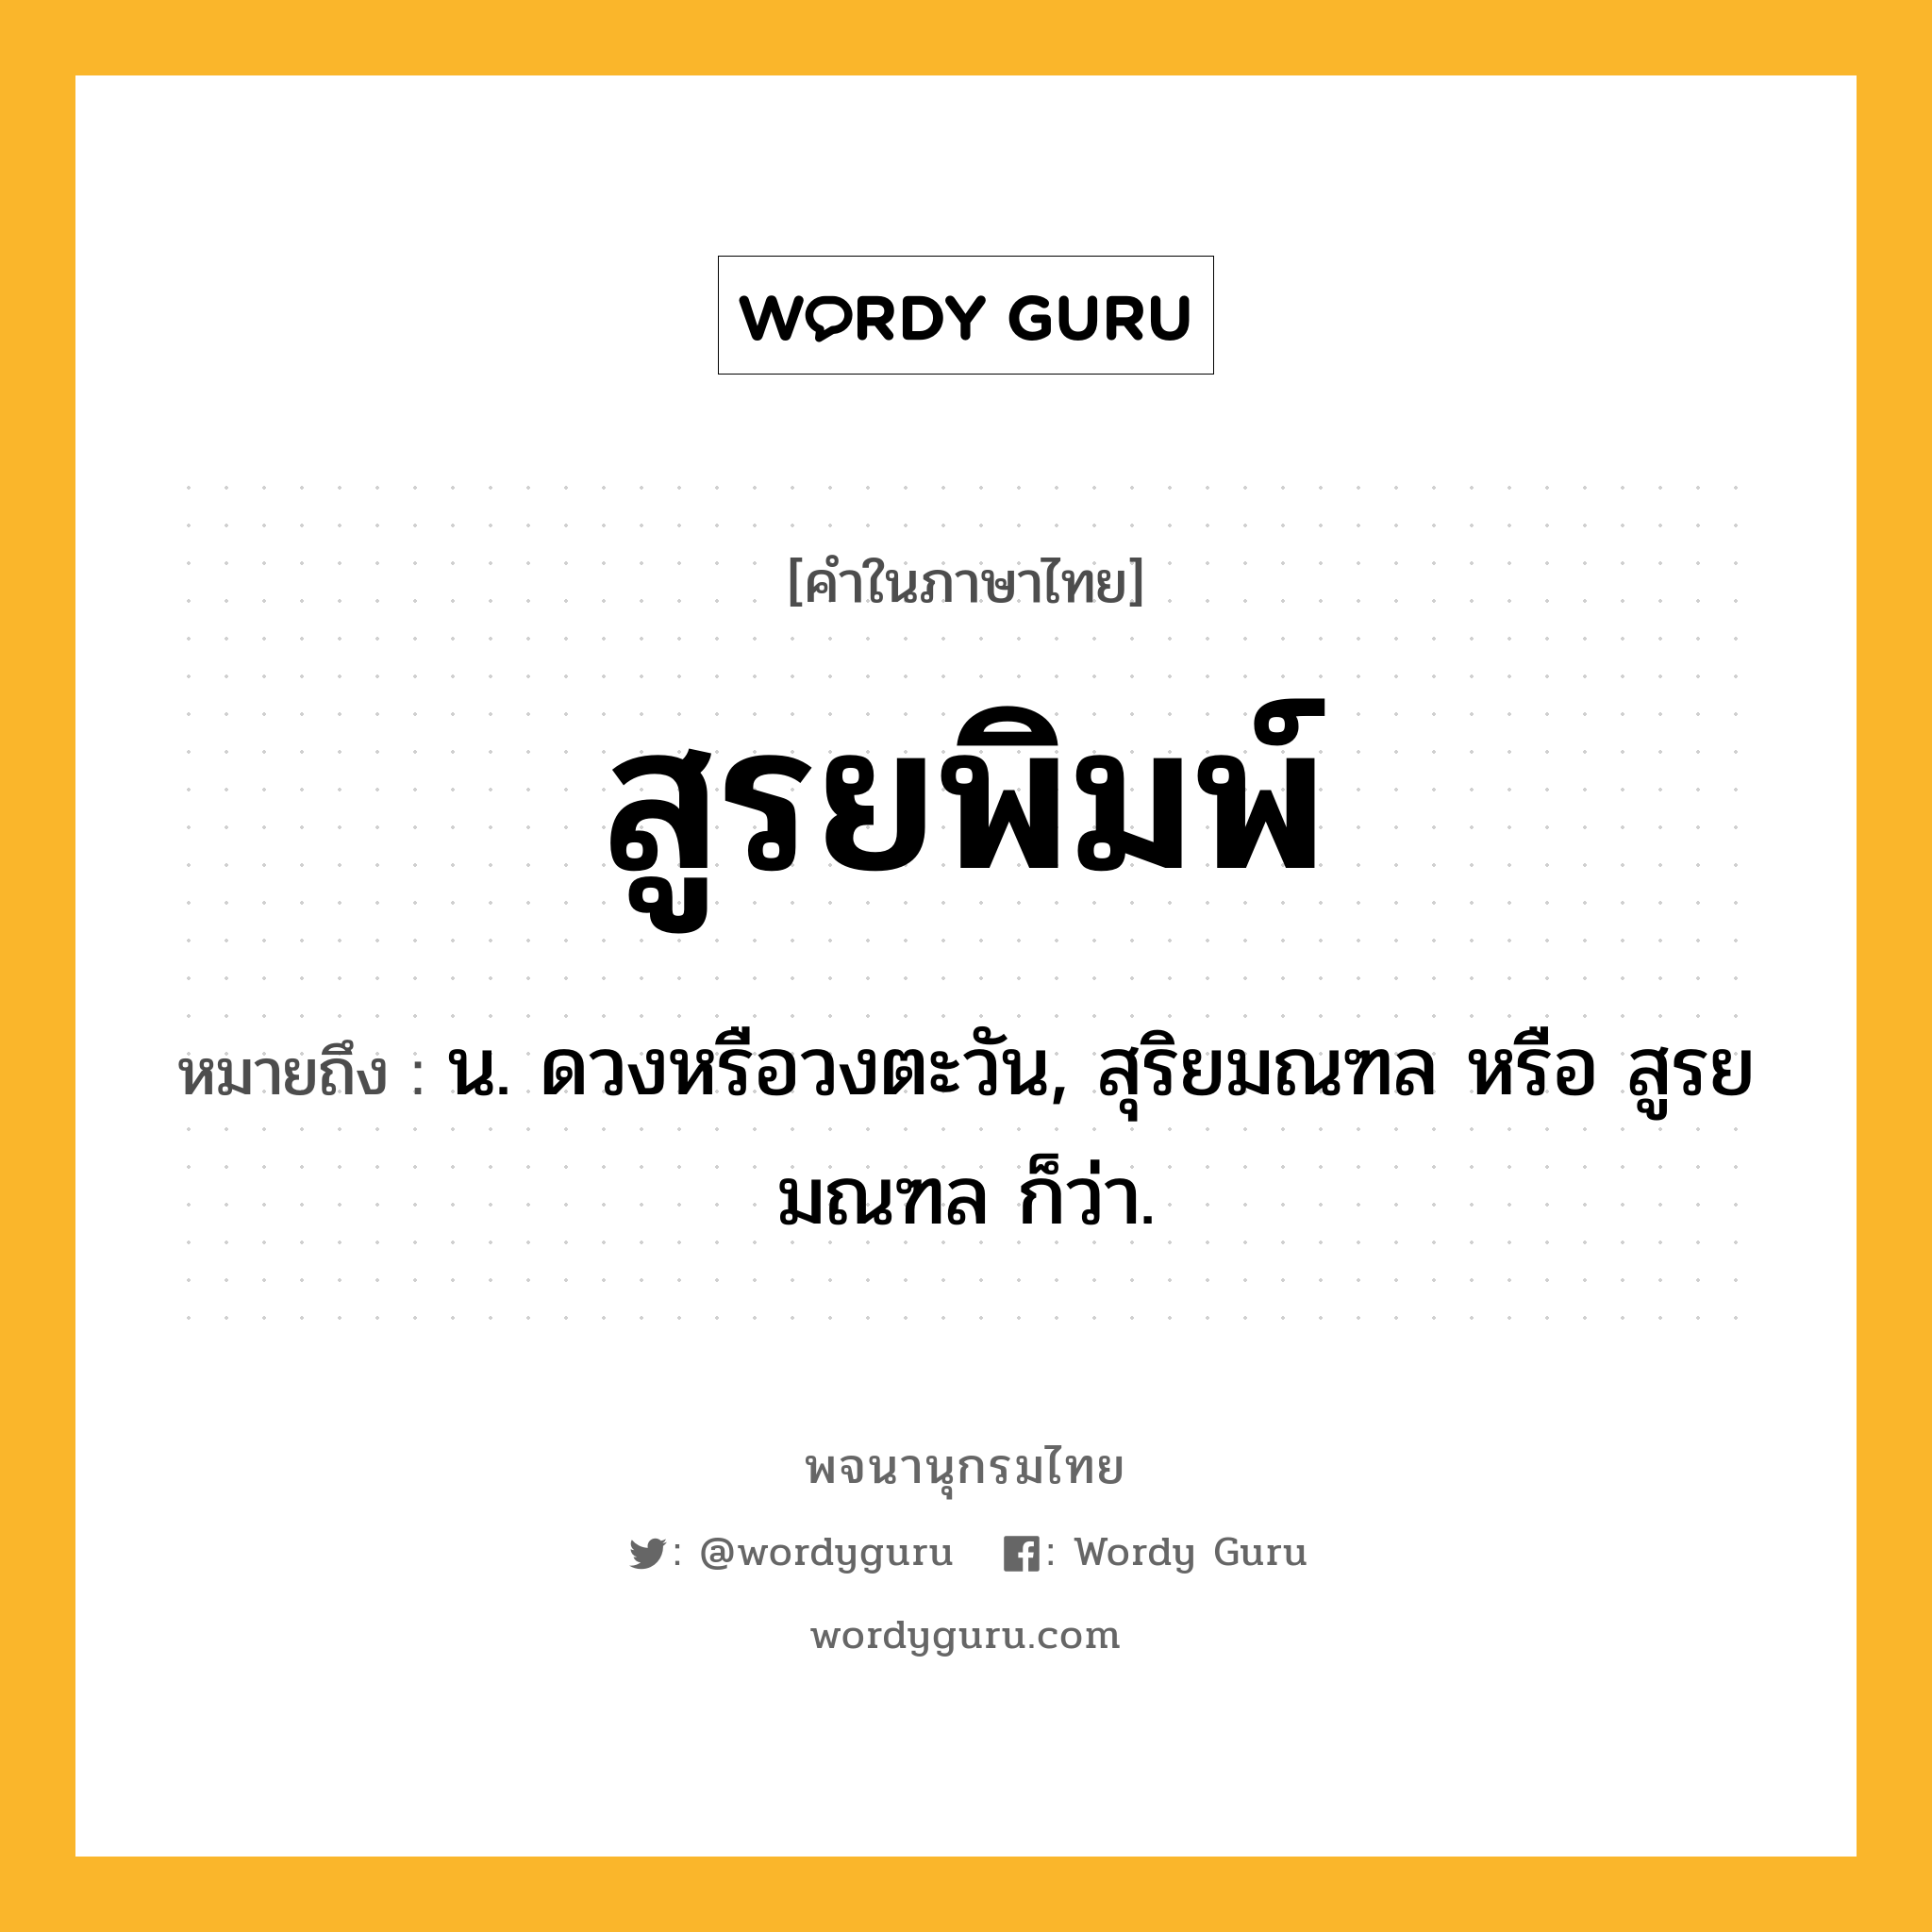 สูรยพิมพ์ หมายถึงอะไร?, คำในภาษาไทย สูรยพิมพ์ หมายถึง น. ดวงหรือวงตะวัน, สุริยมณฑล หรือ สูรยมณฑล ก็ว่า.